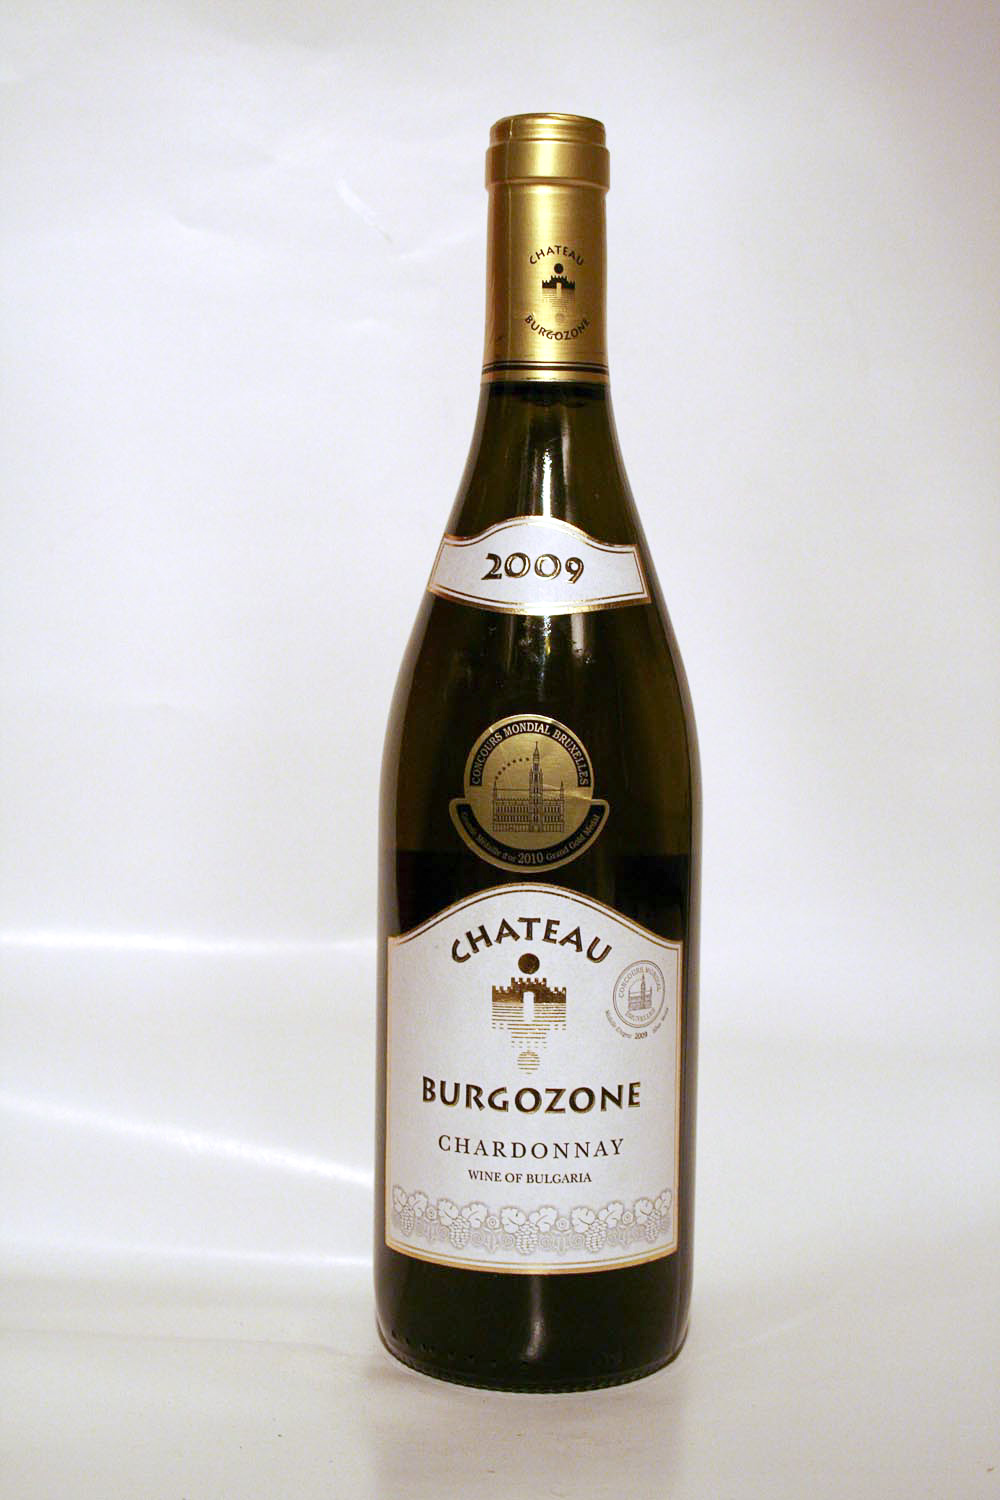 Chateau Burgozone Chardonnay 2009